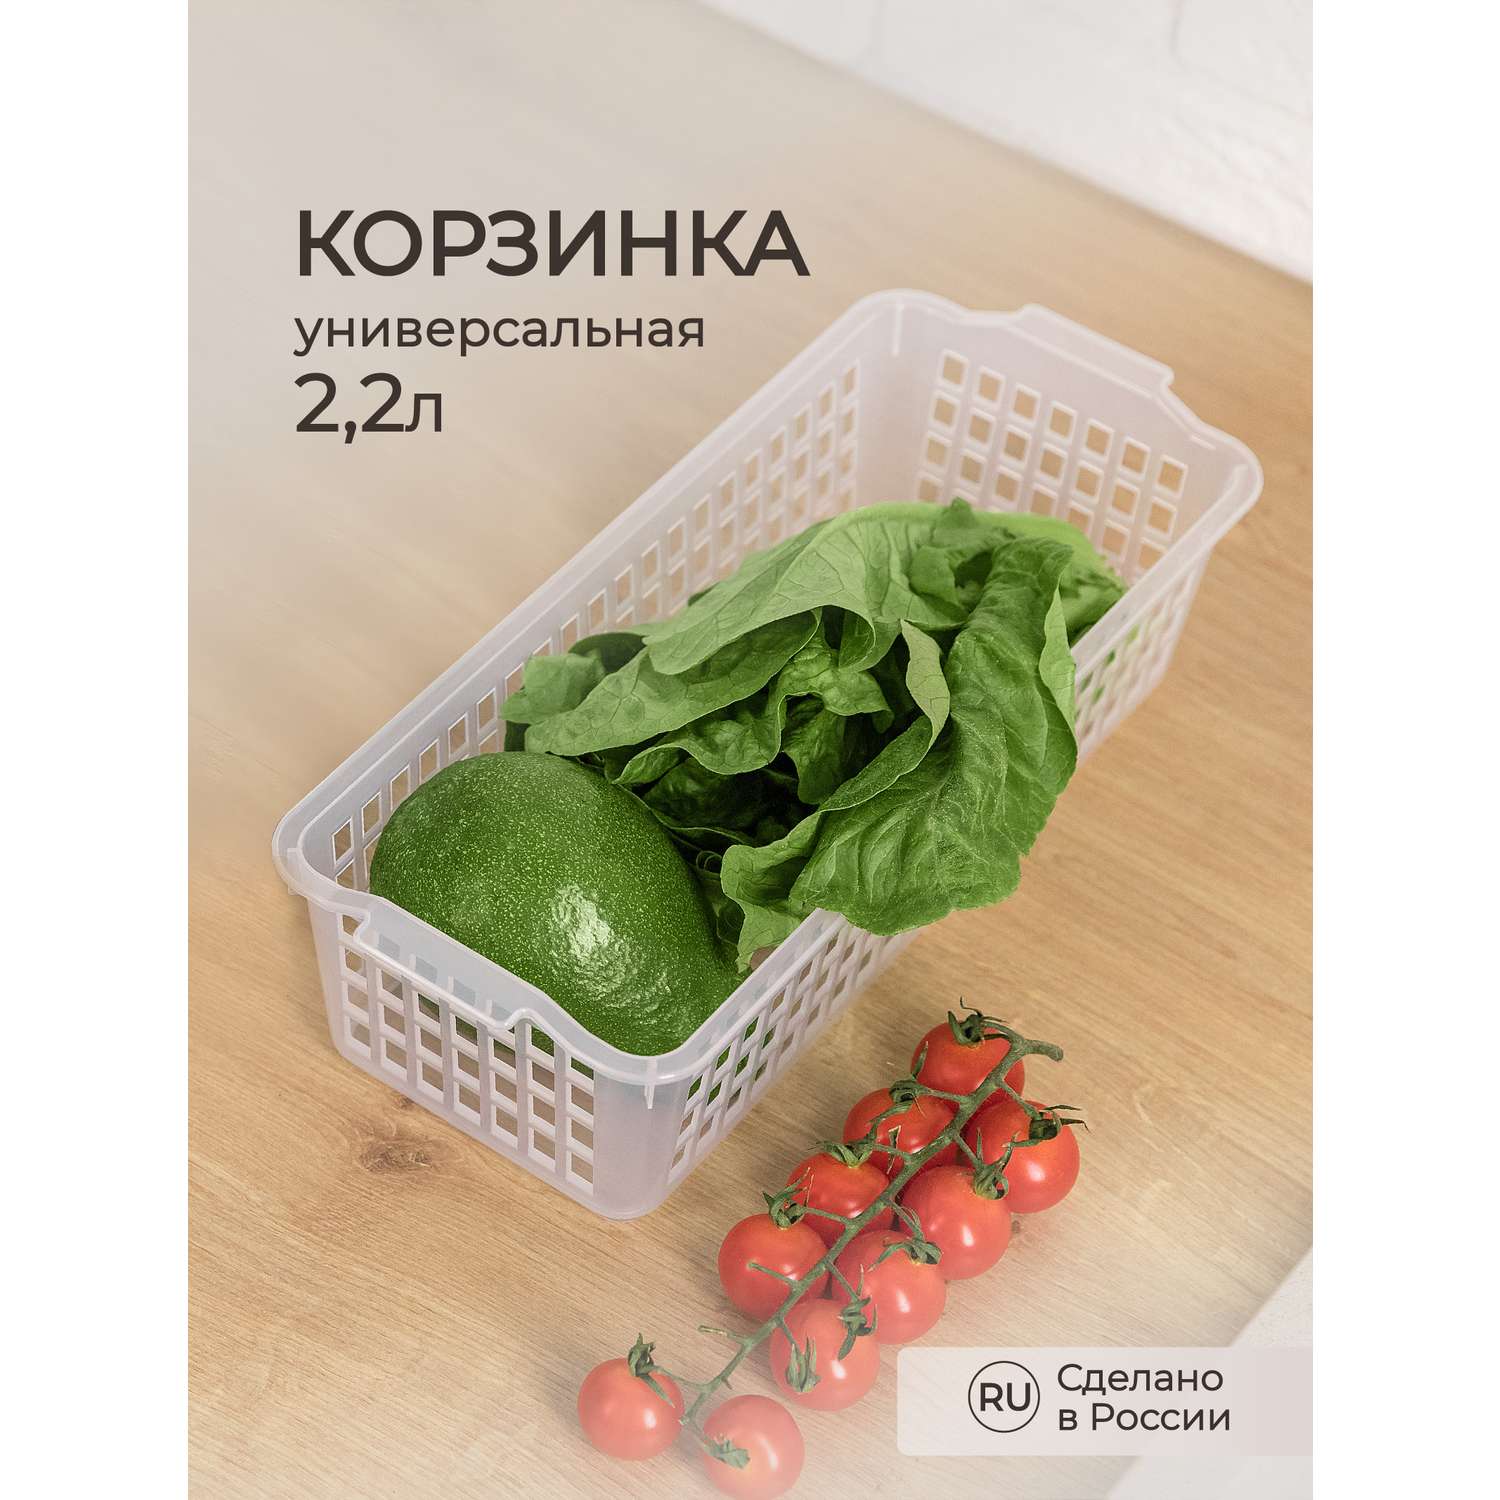 Корзинка универсальная Phibo для хранения в холодильнике прозрачная - фото 1